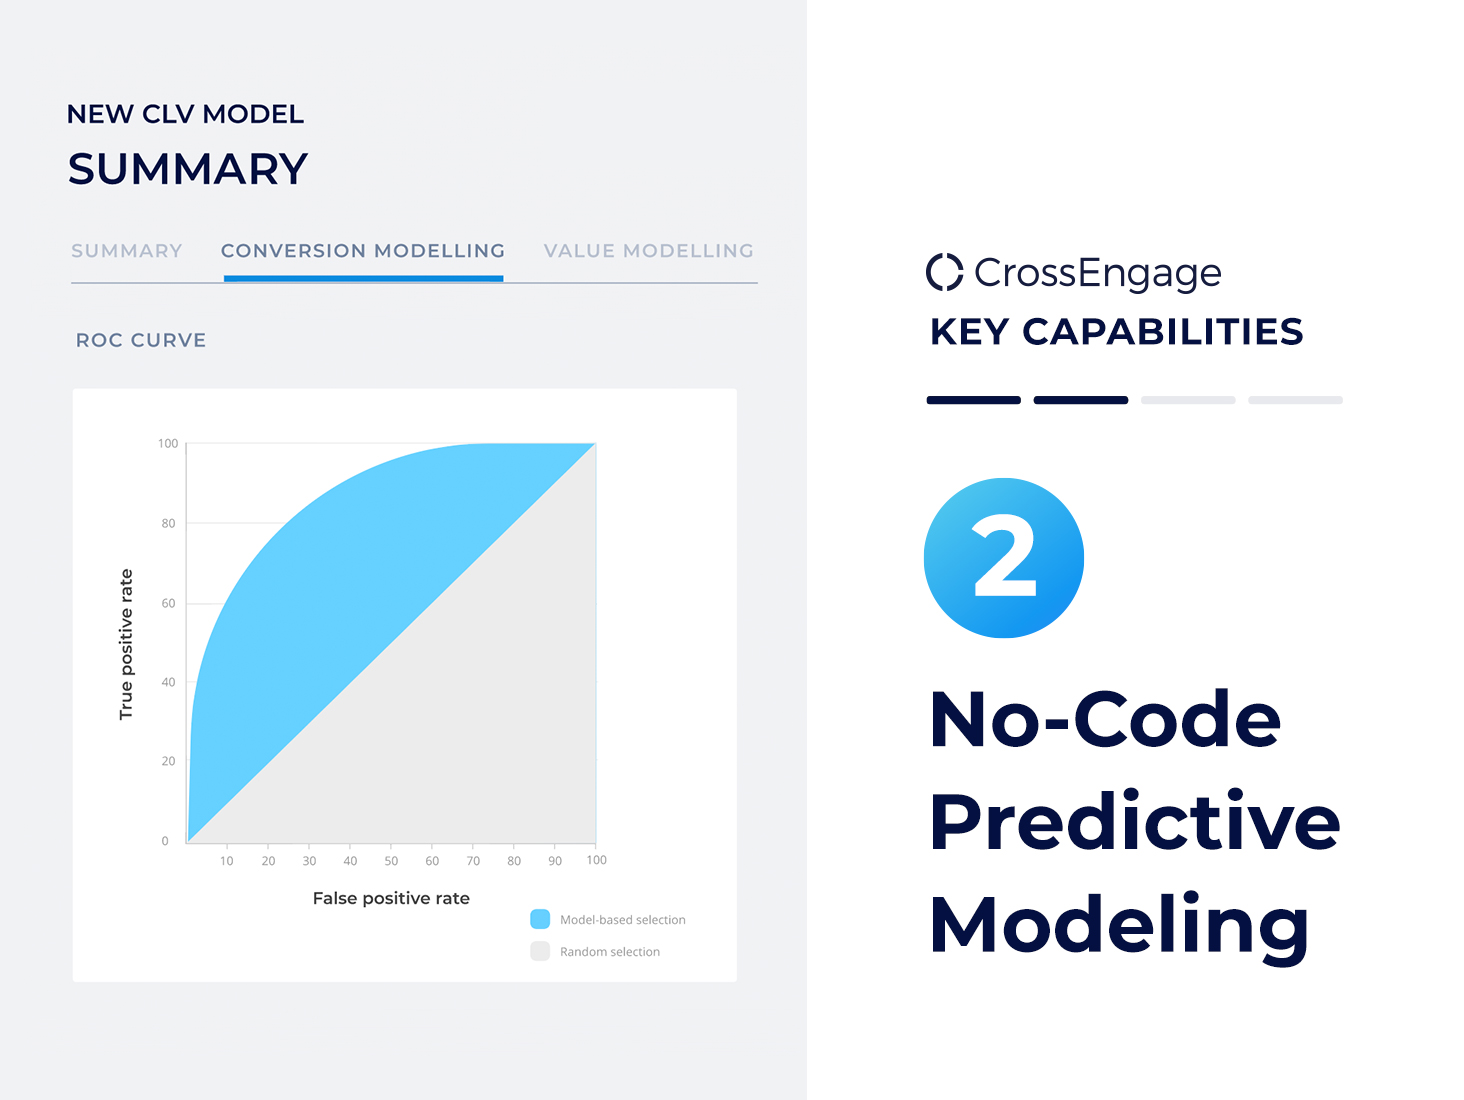 No-Code Predictive Modeling